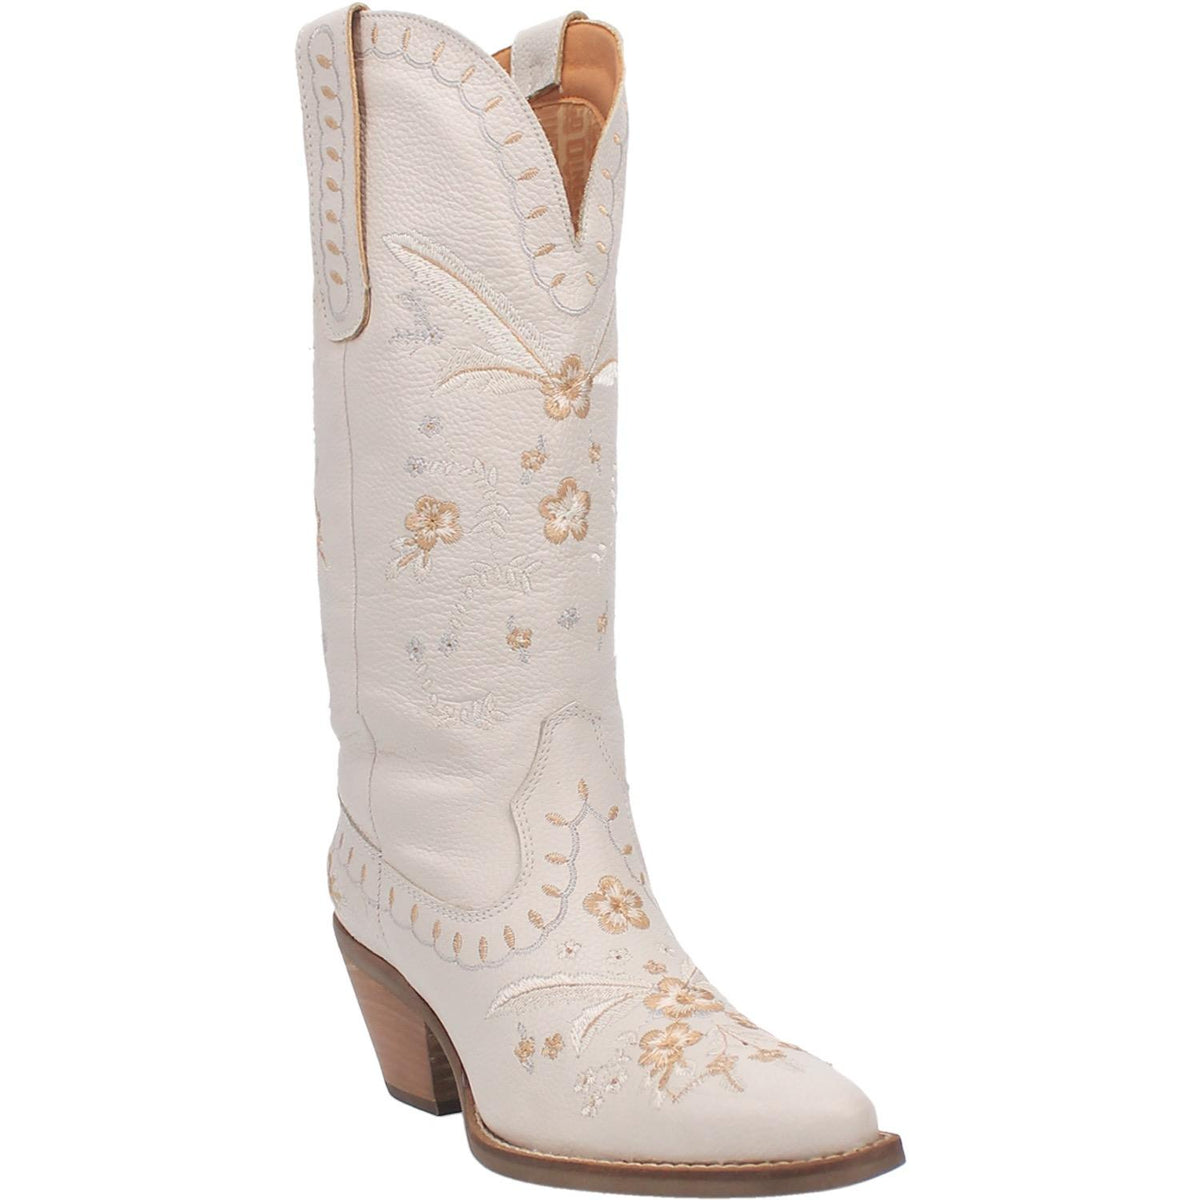 Womens Boots/Footwear – BJ's Western Store